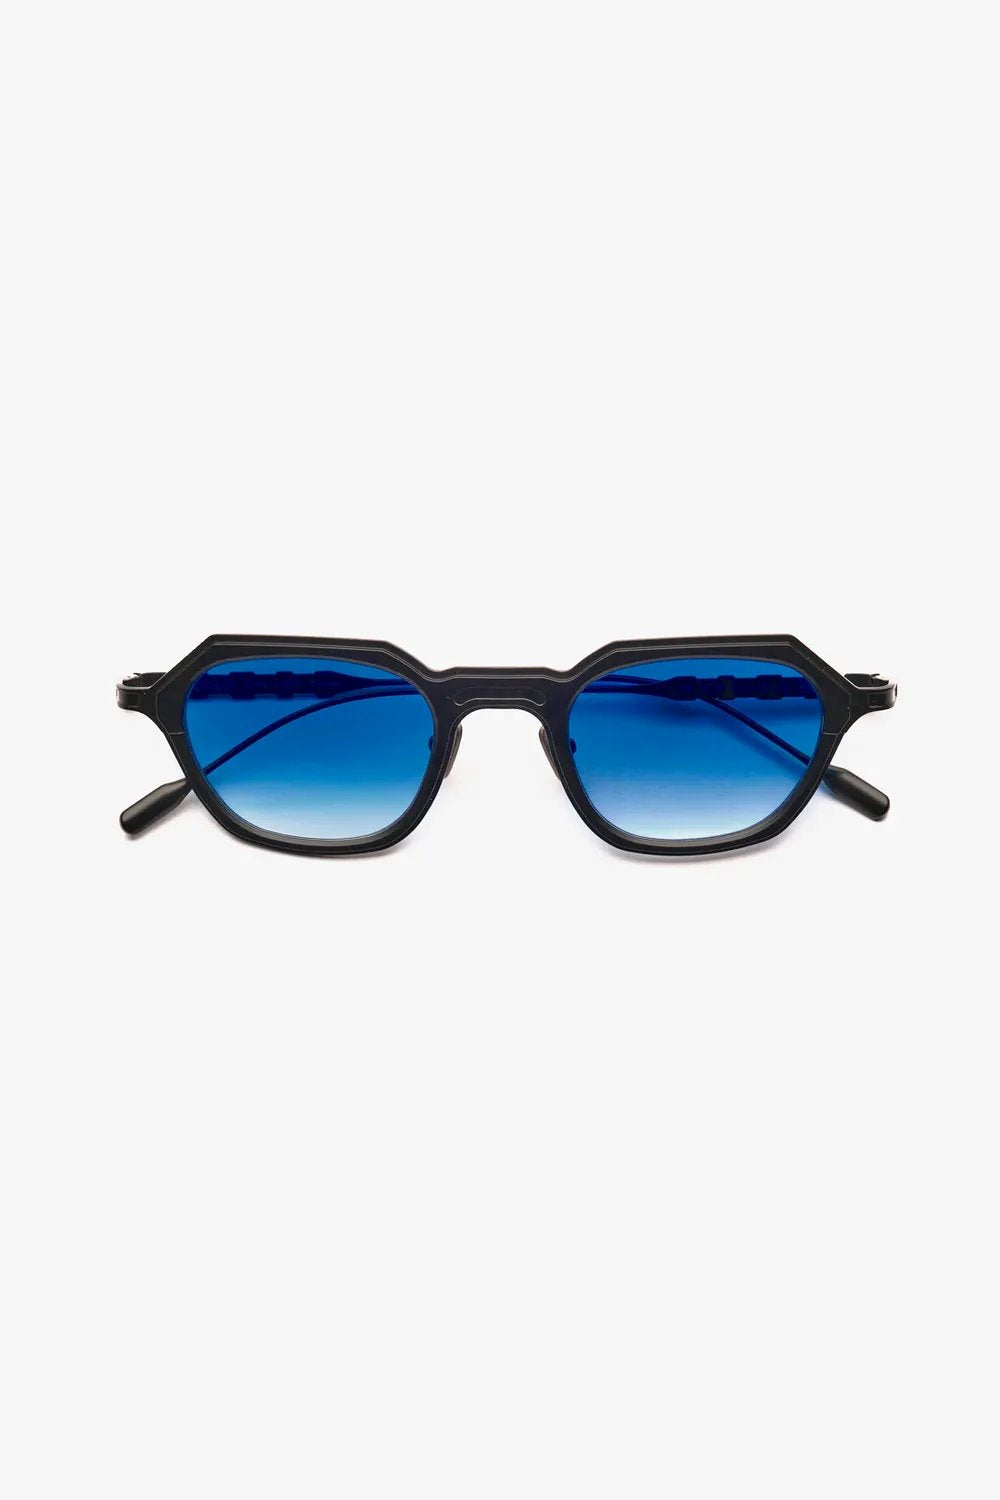 Capote - CC34 Sunglasses Capote Blue ONES 